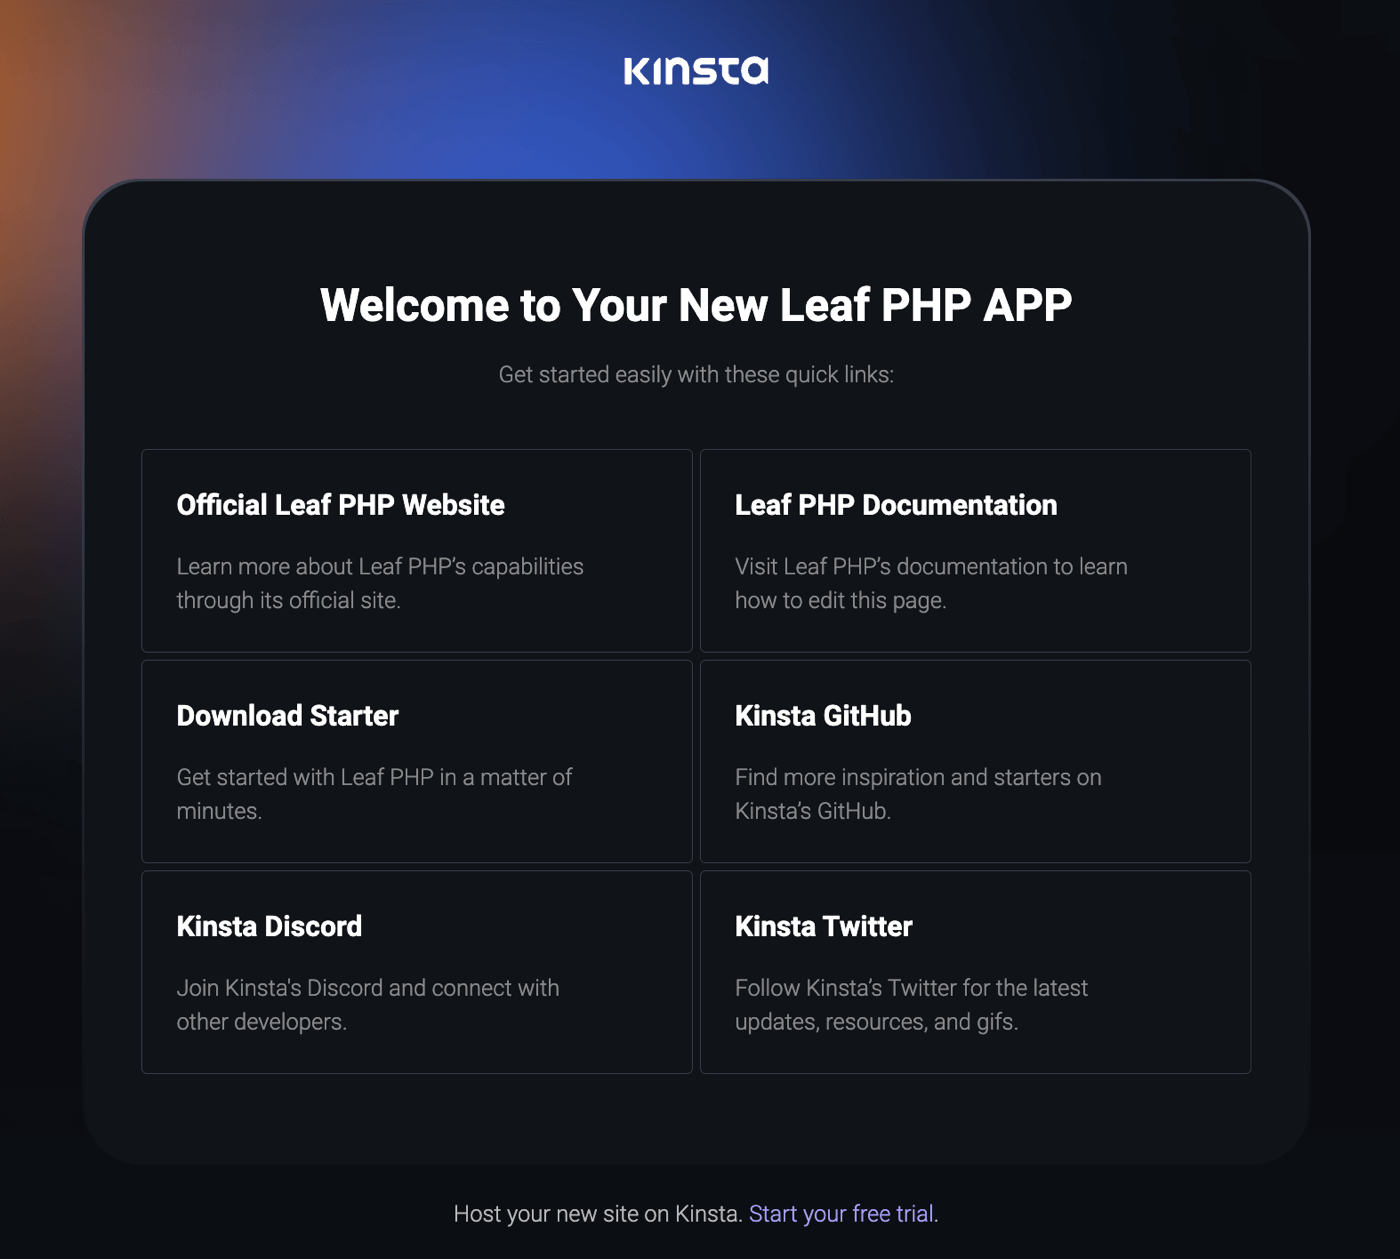 Kinsta's välkomstsida efter lyckad installation av Leaf PHP.